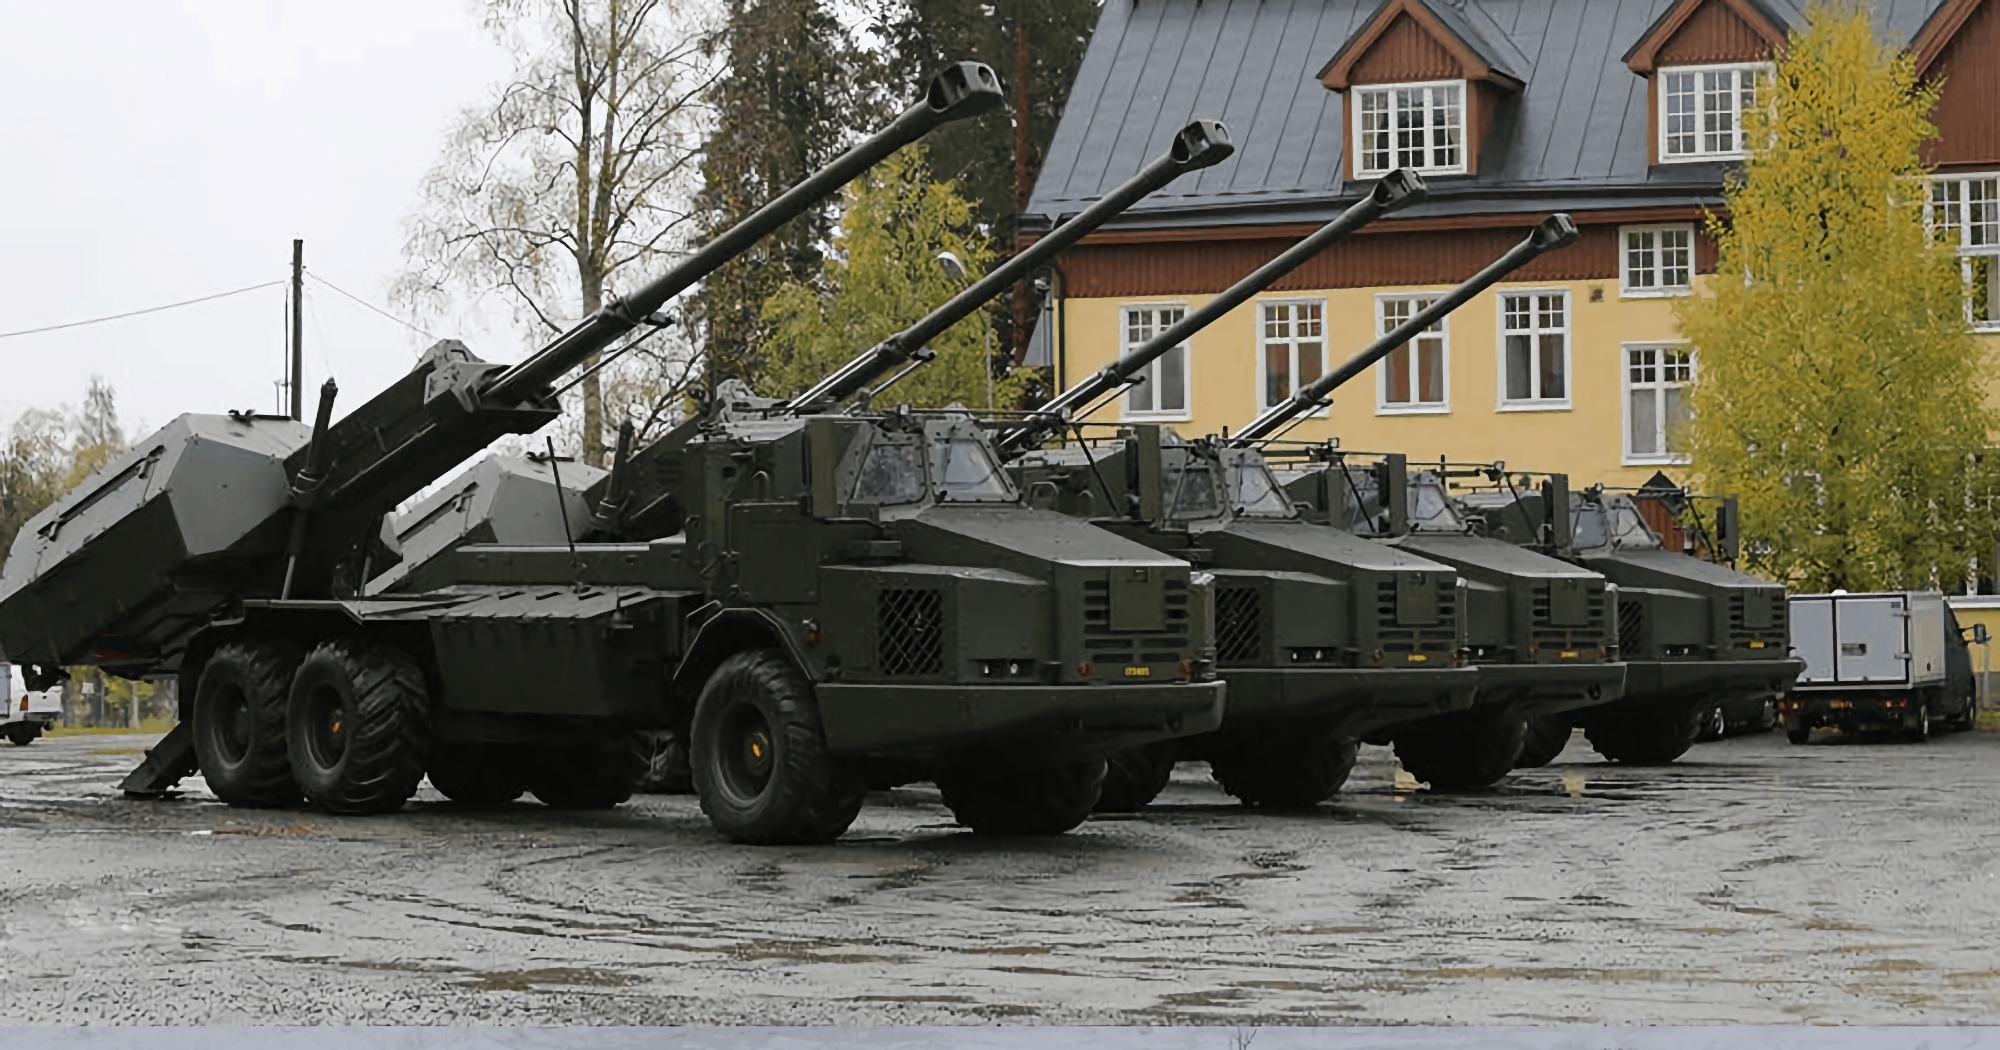 Jetzt ist es offiziell: Schweden liefert der Ukraine 8 fortschrittliche Archer-Panzerartillerieeinheiten, die mehr als 21 Schuss in 3,5 Minuten abgeben können